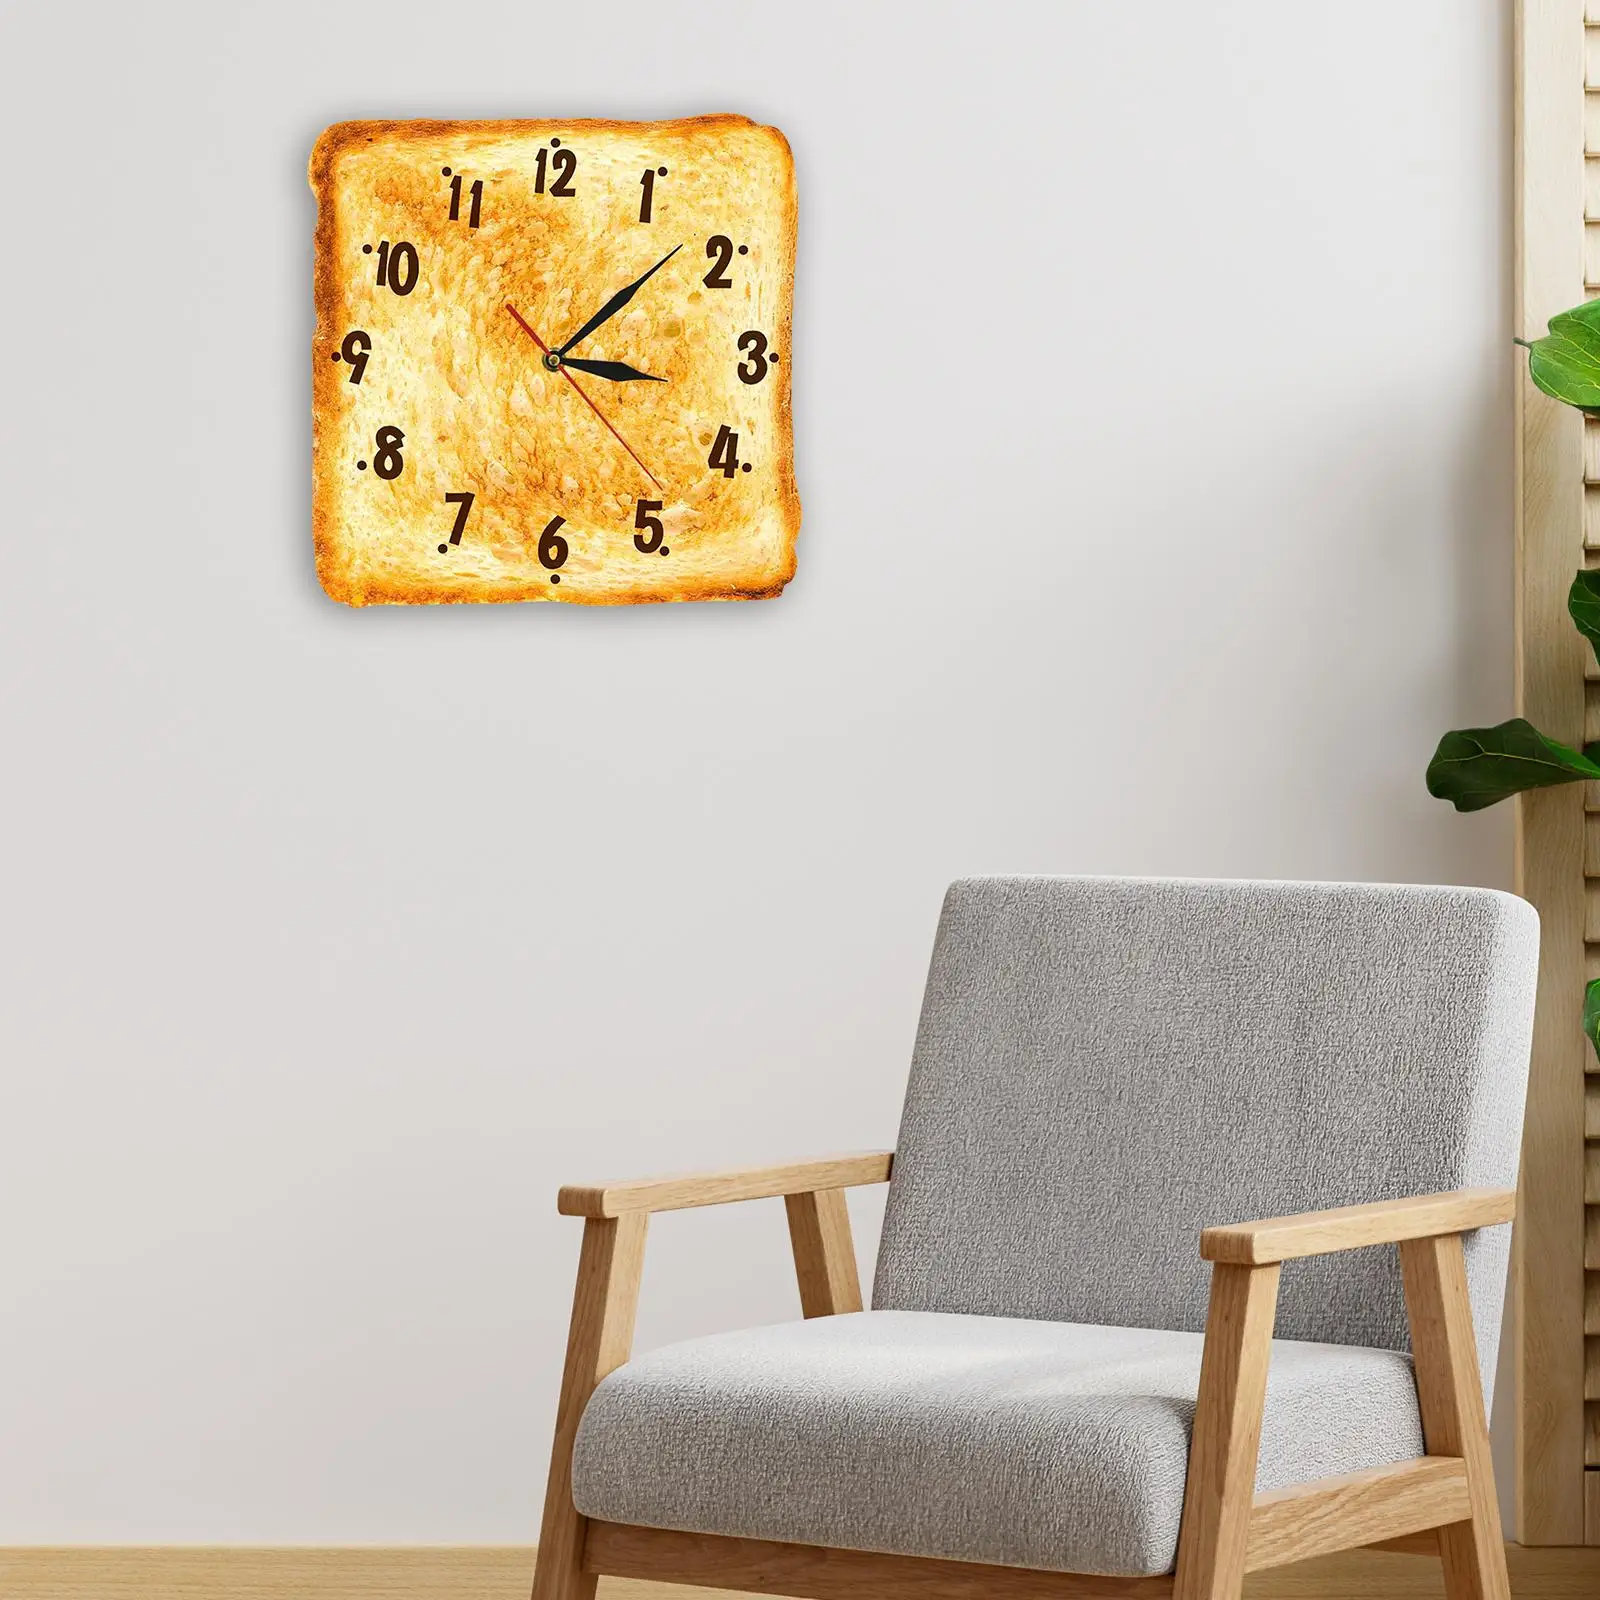 Toasted Bread Wall Clock 30cm Non Ticking Decorative Square Arabic Numerals